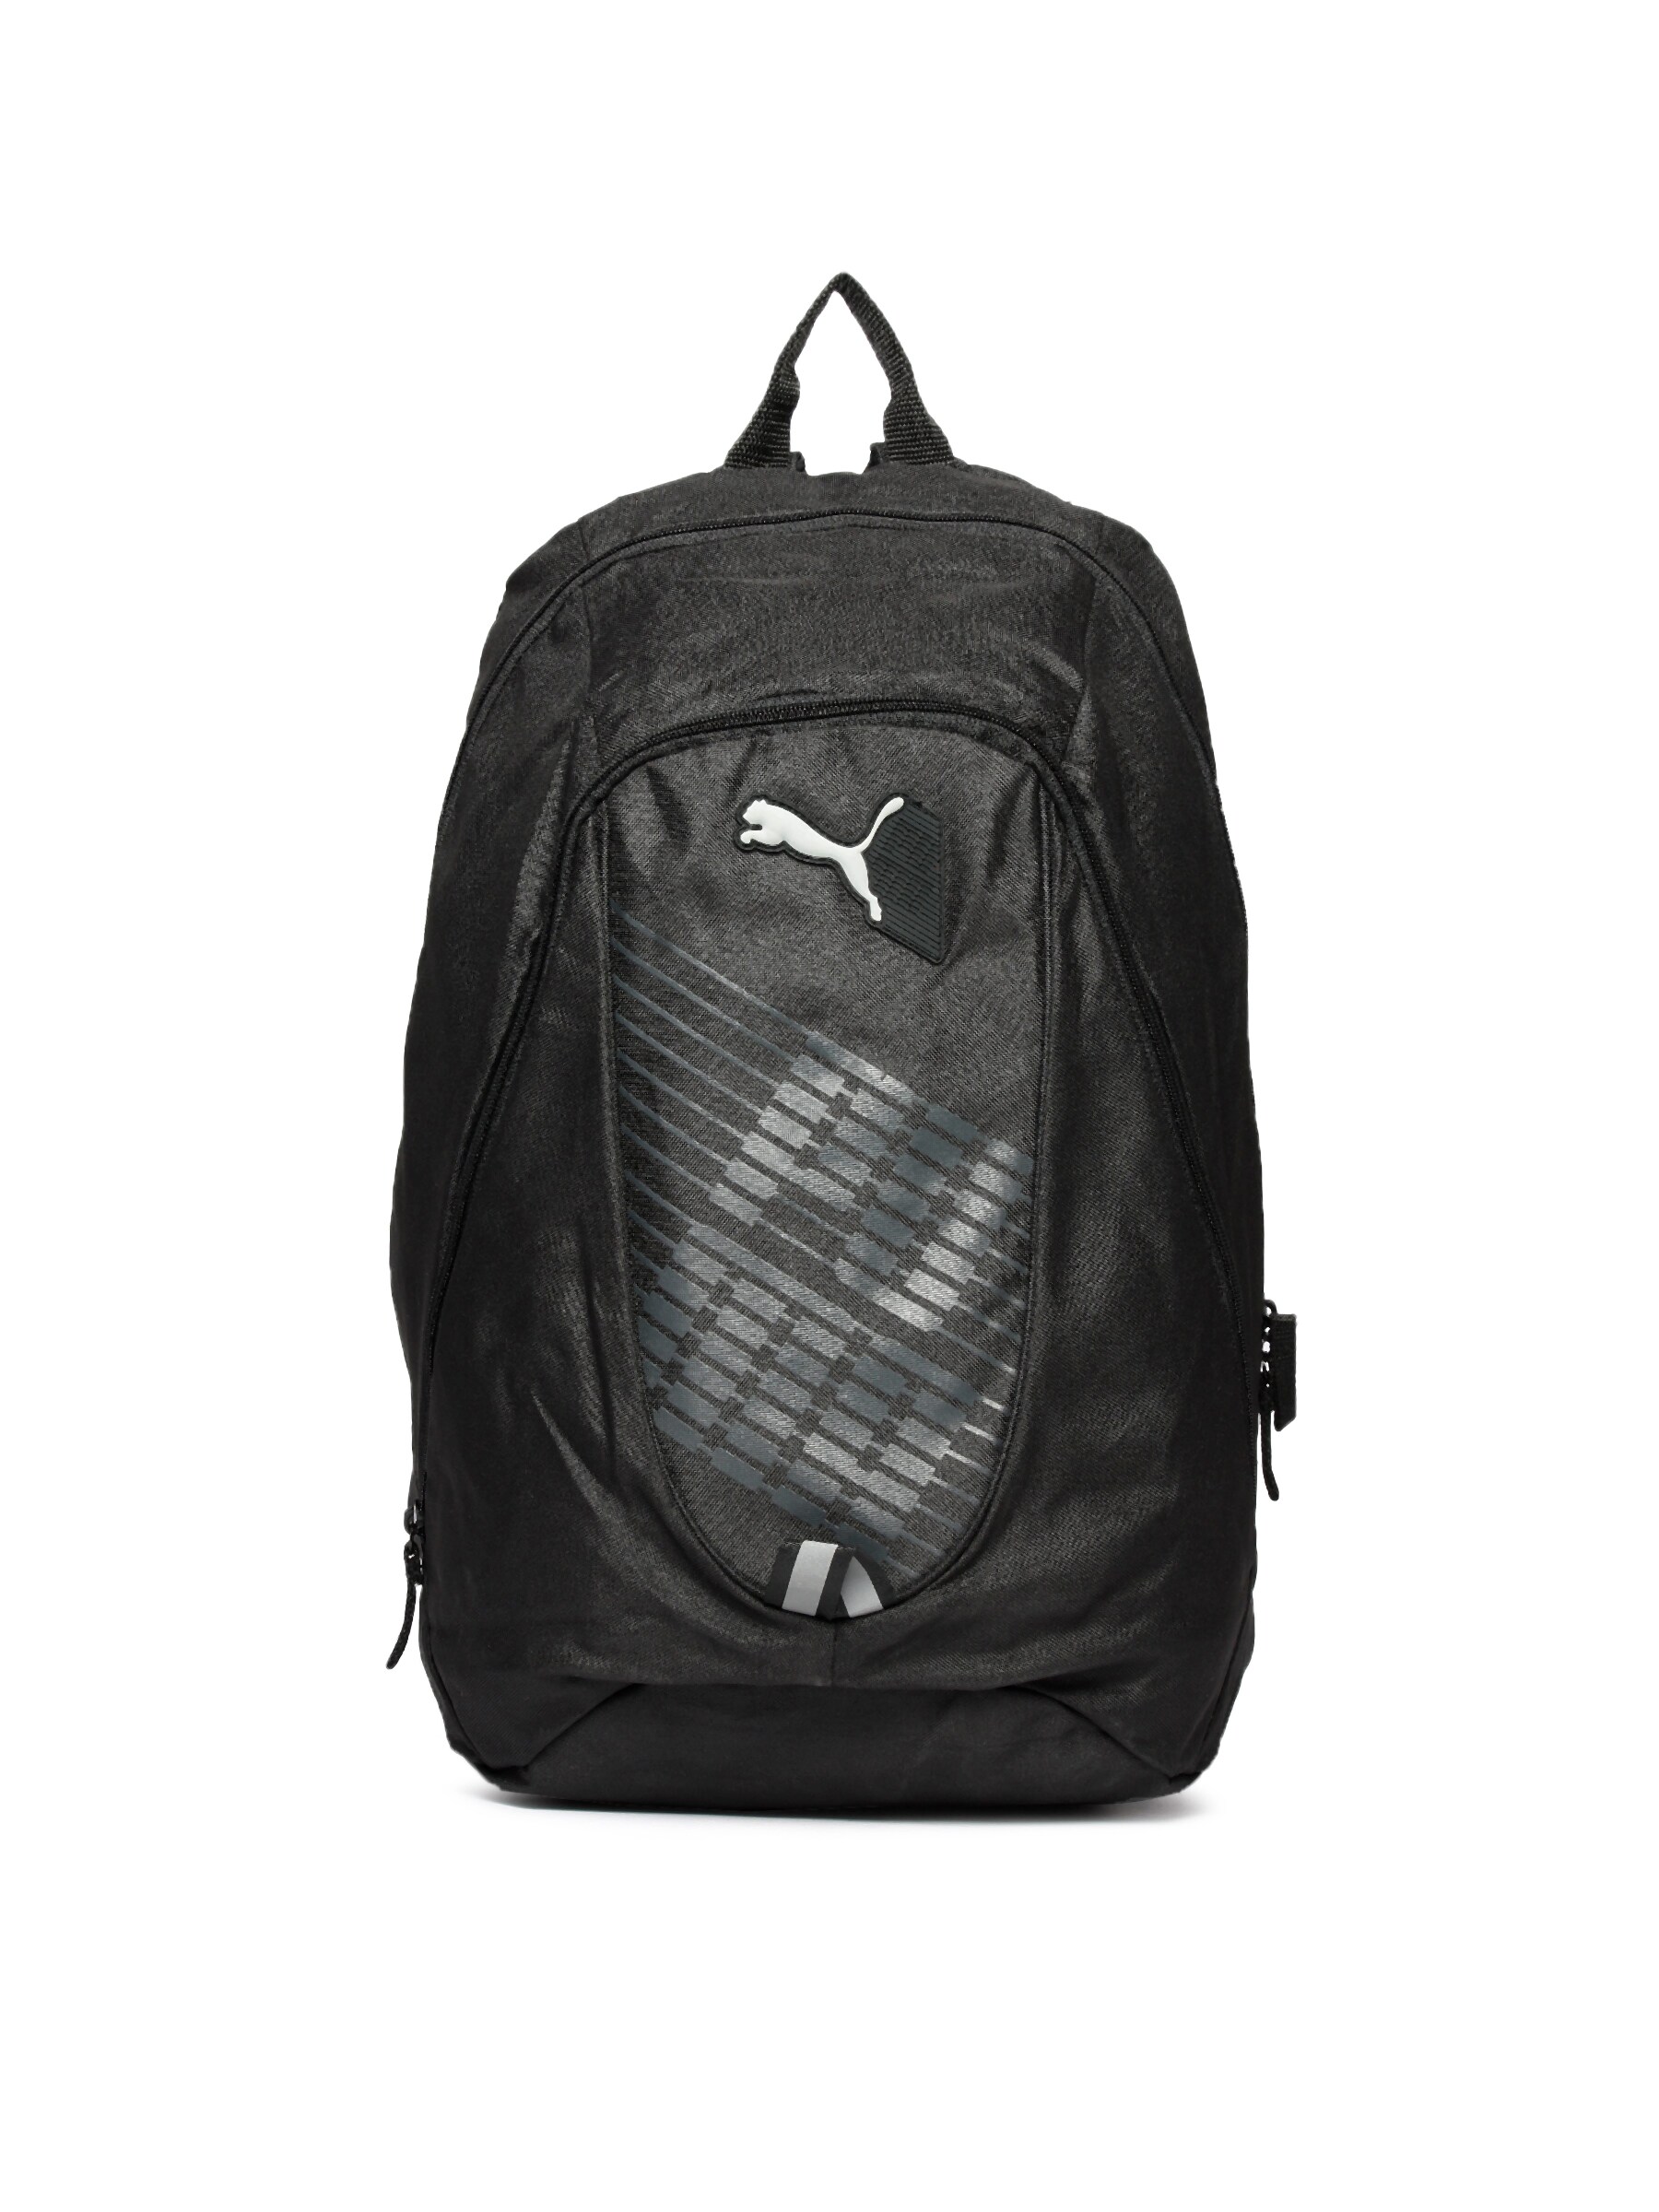 Puma Unisex Apex Black Backpack